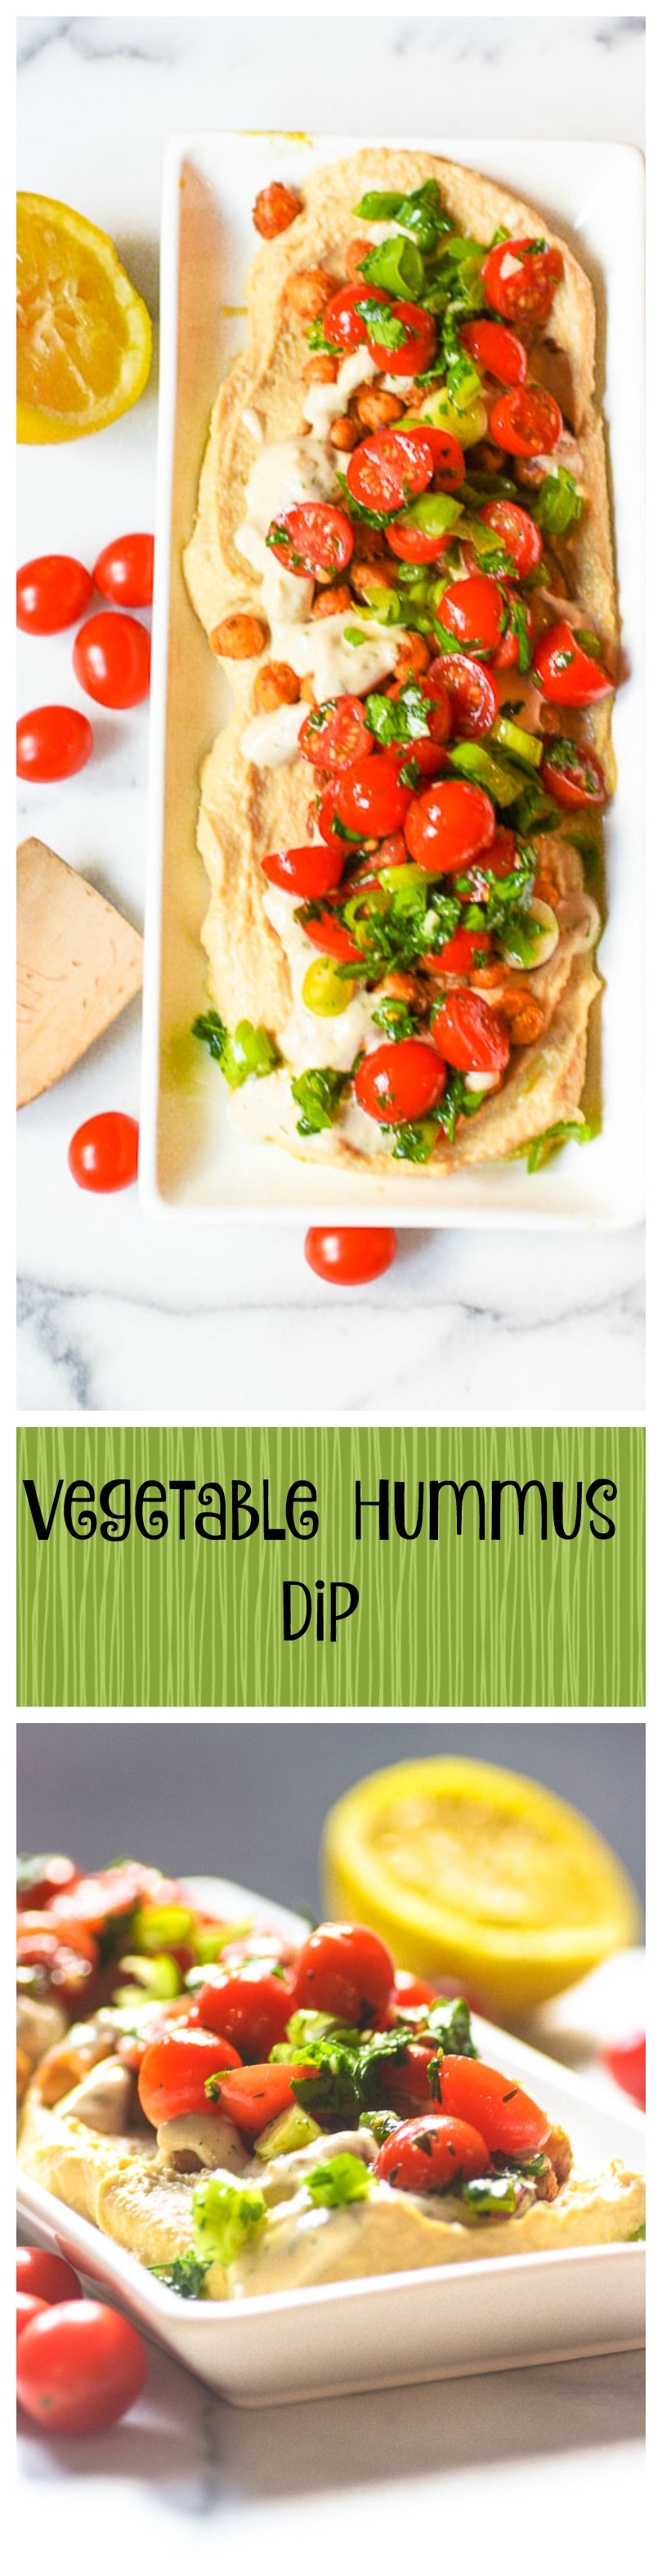 vegetable hummus dip